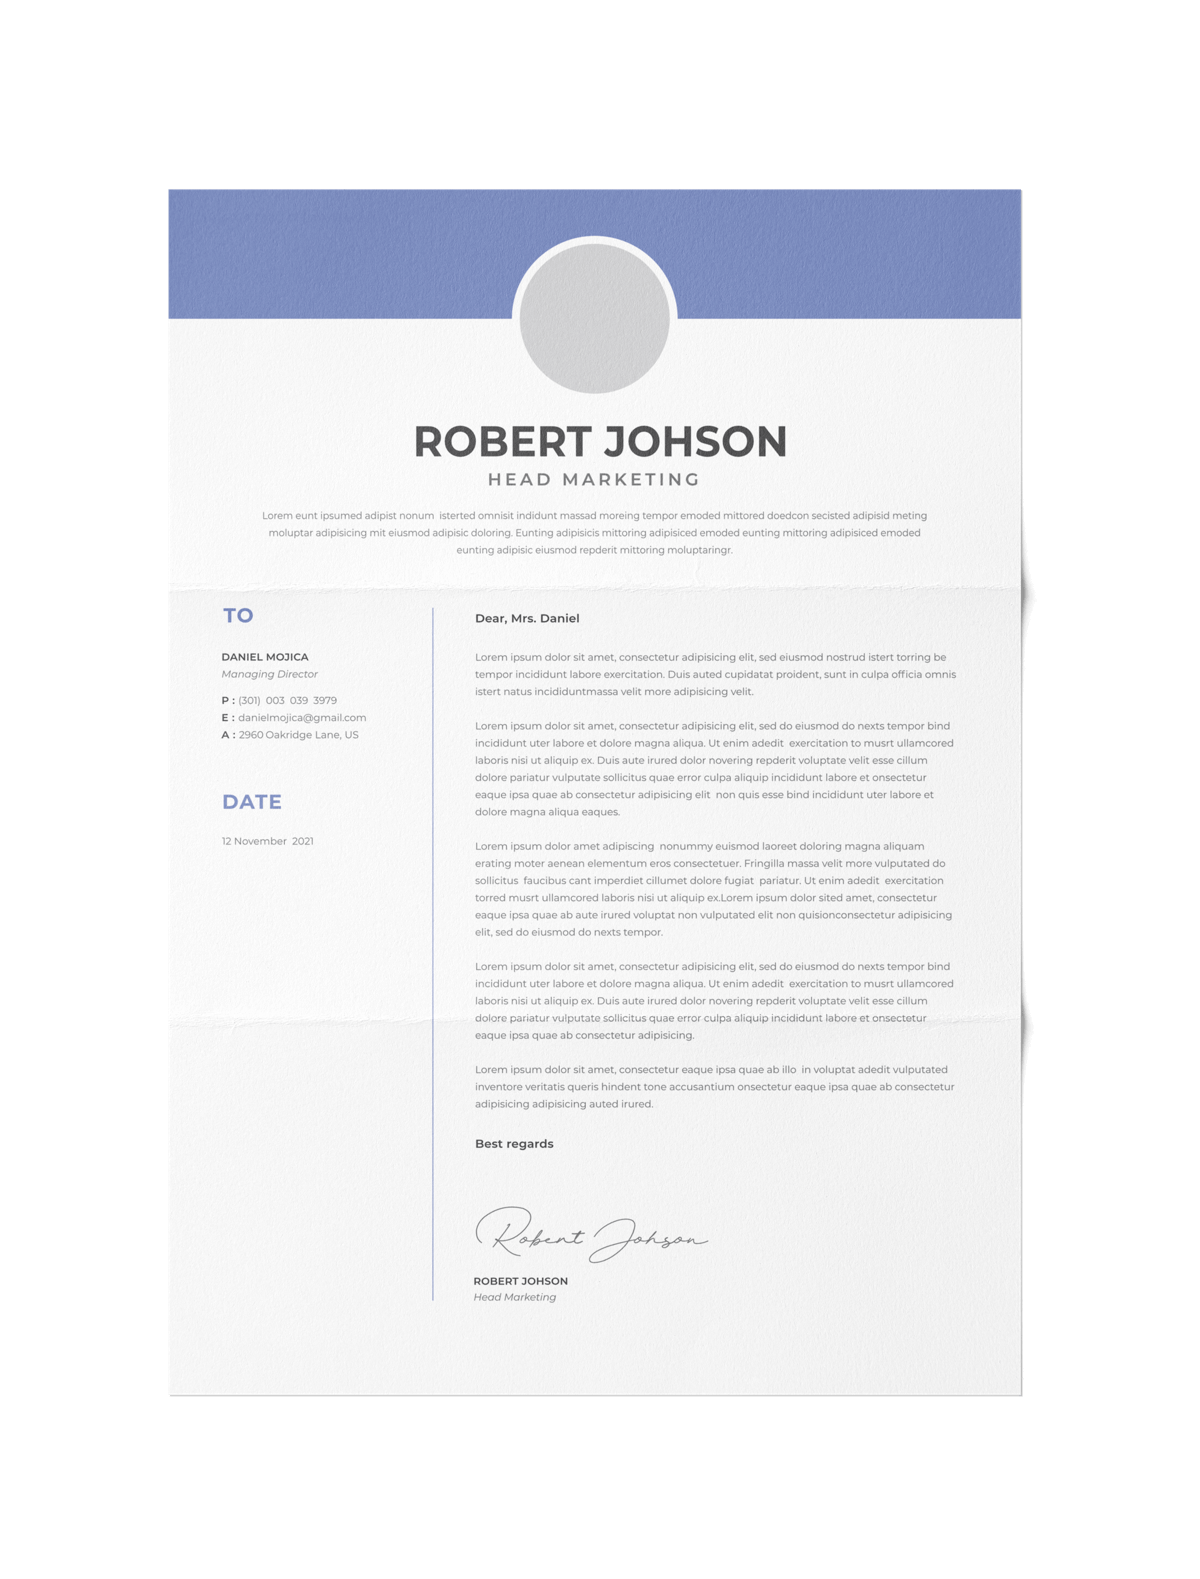 CV #114 Robert Johson